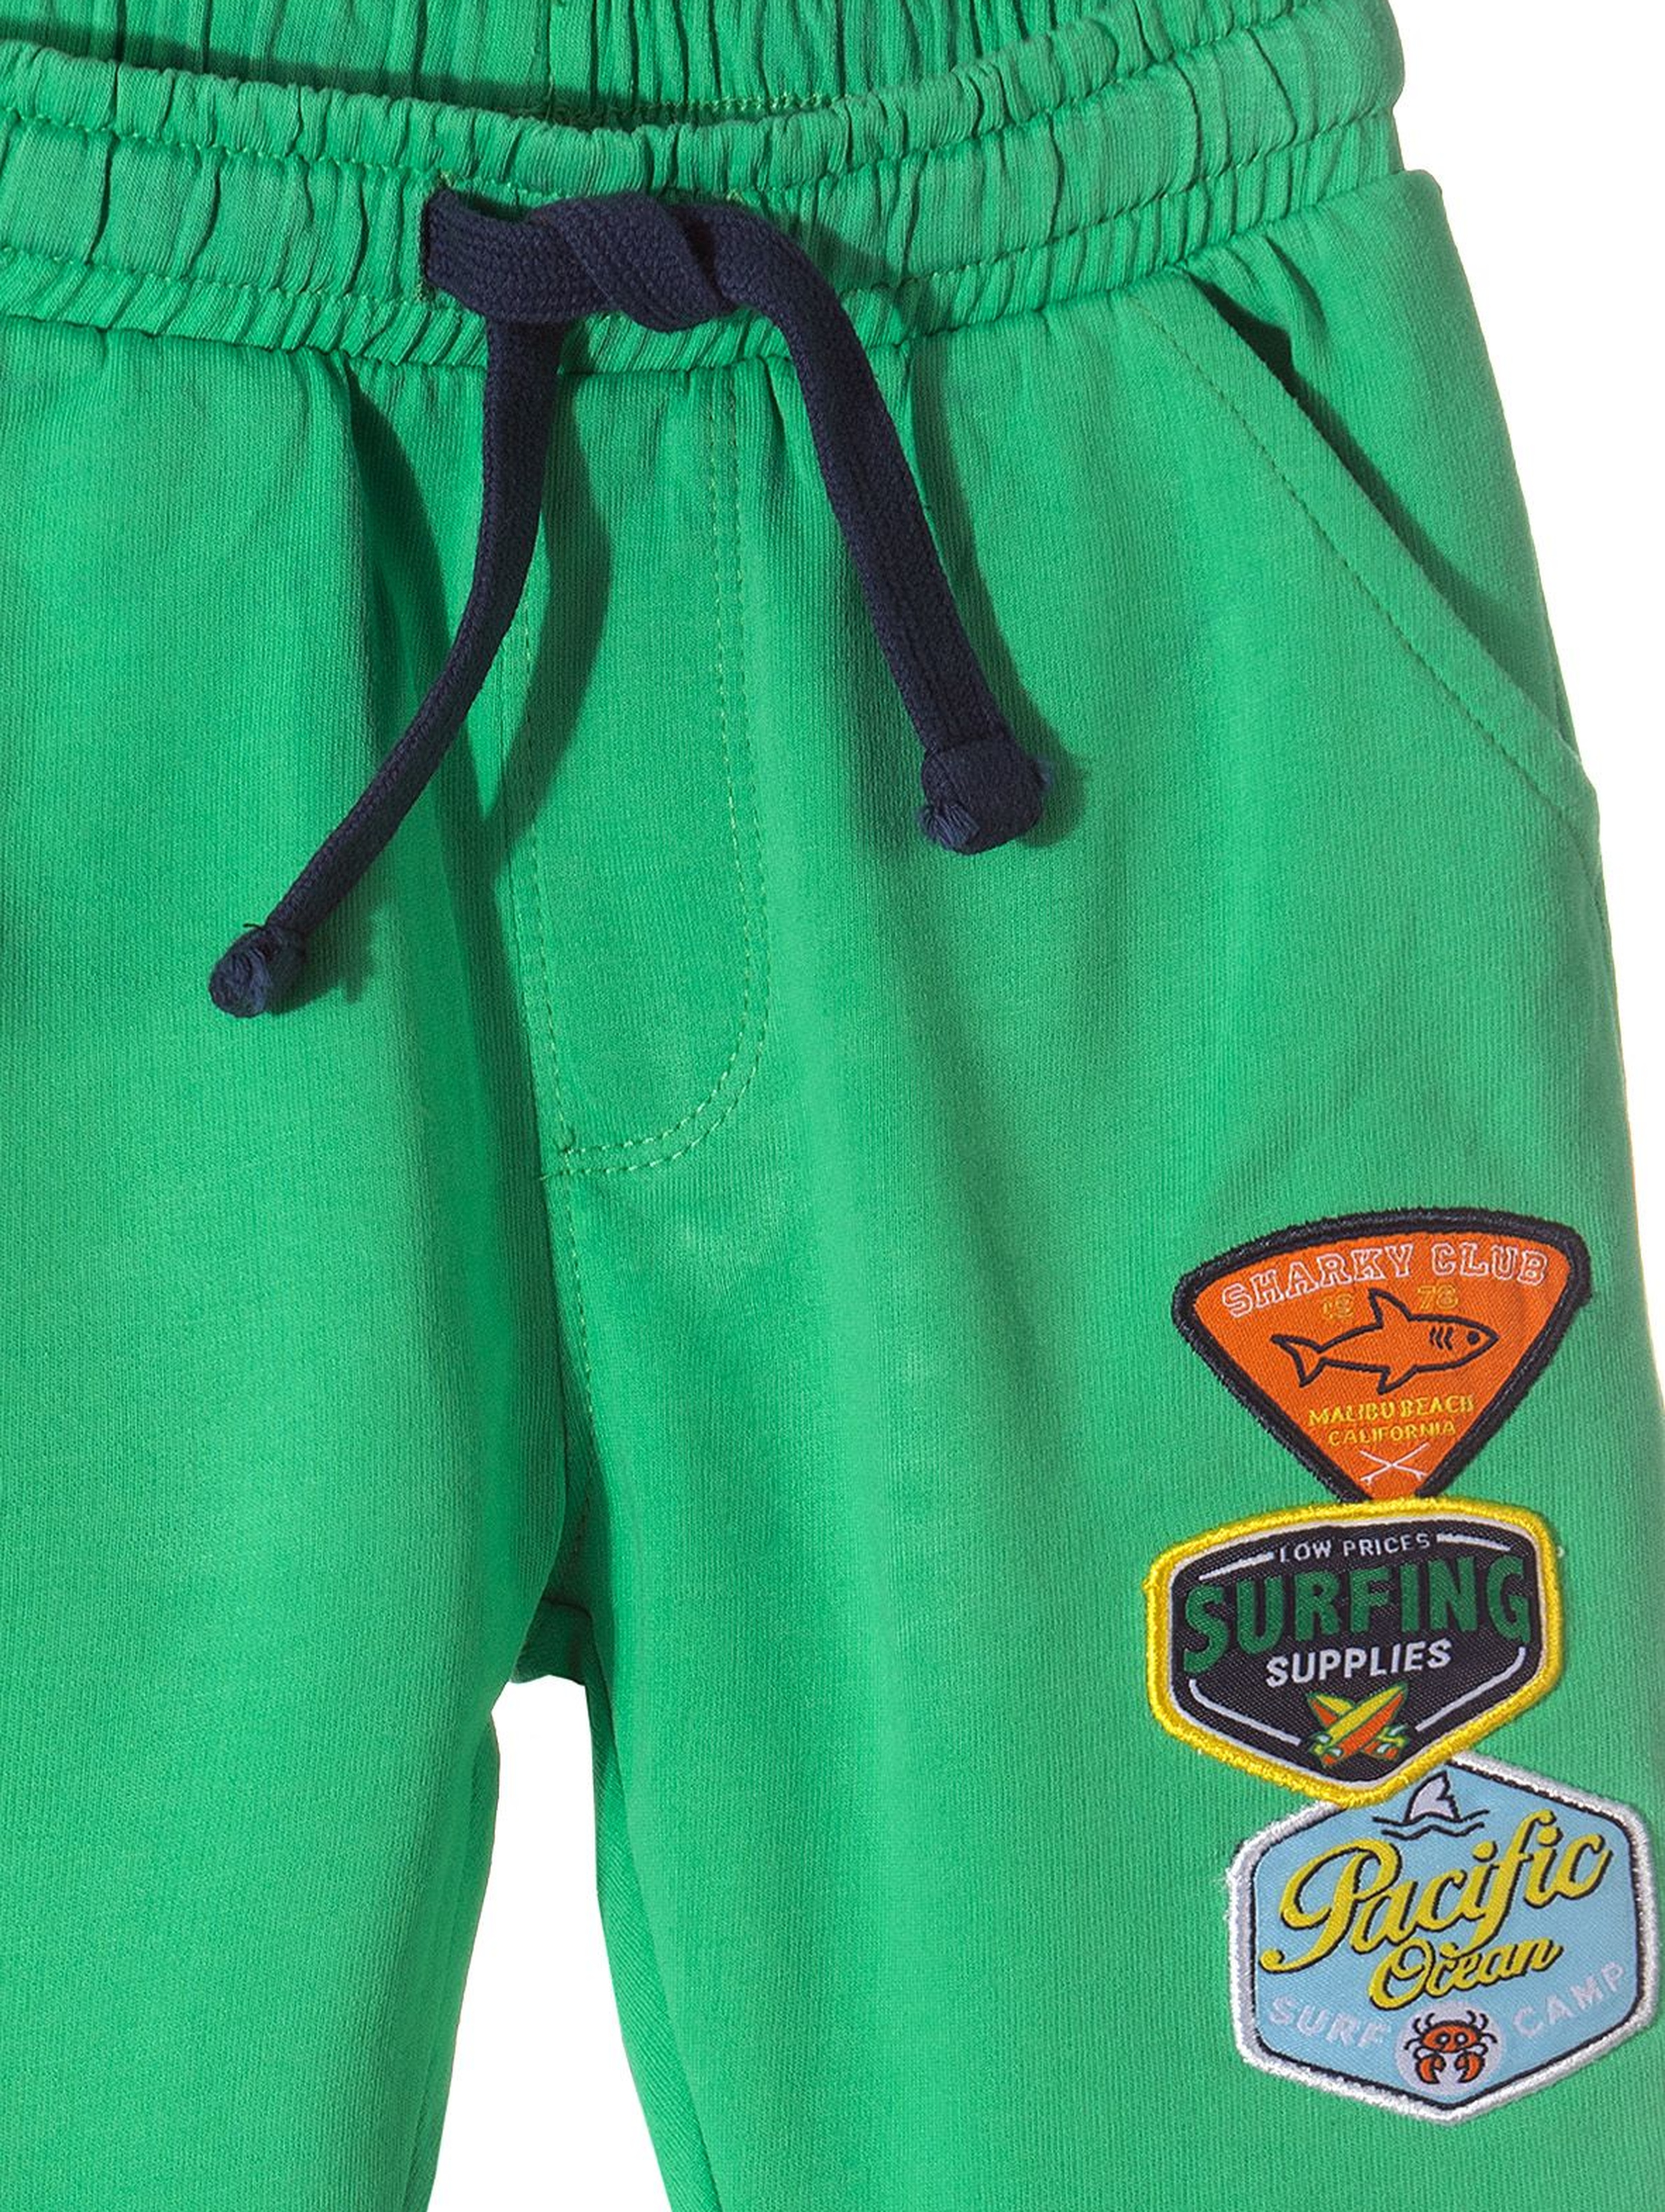 Spodnie dresowe chłopięce-zielone